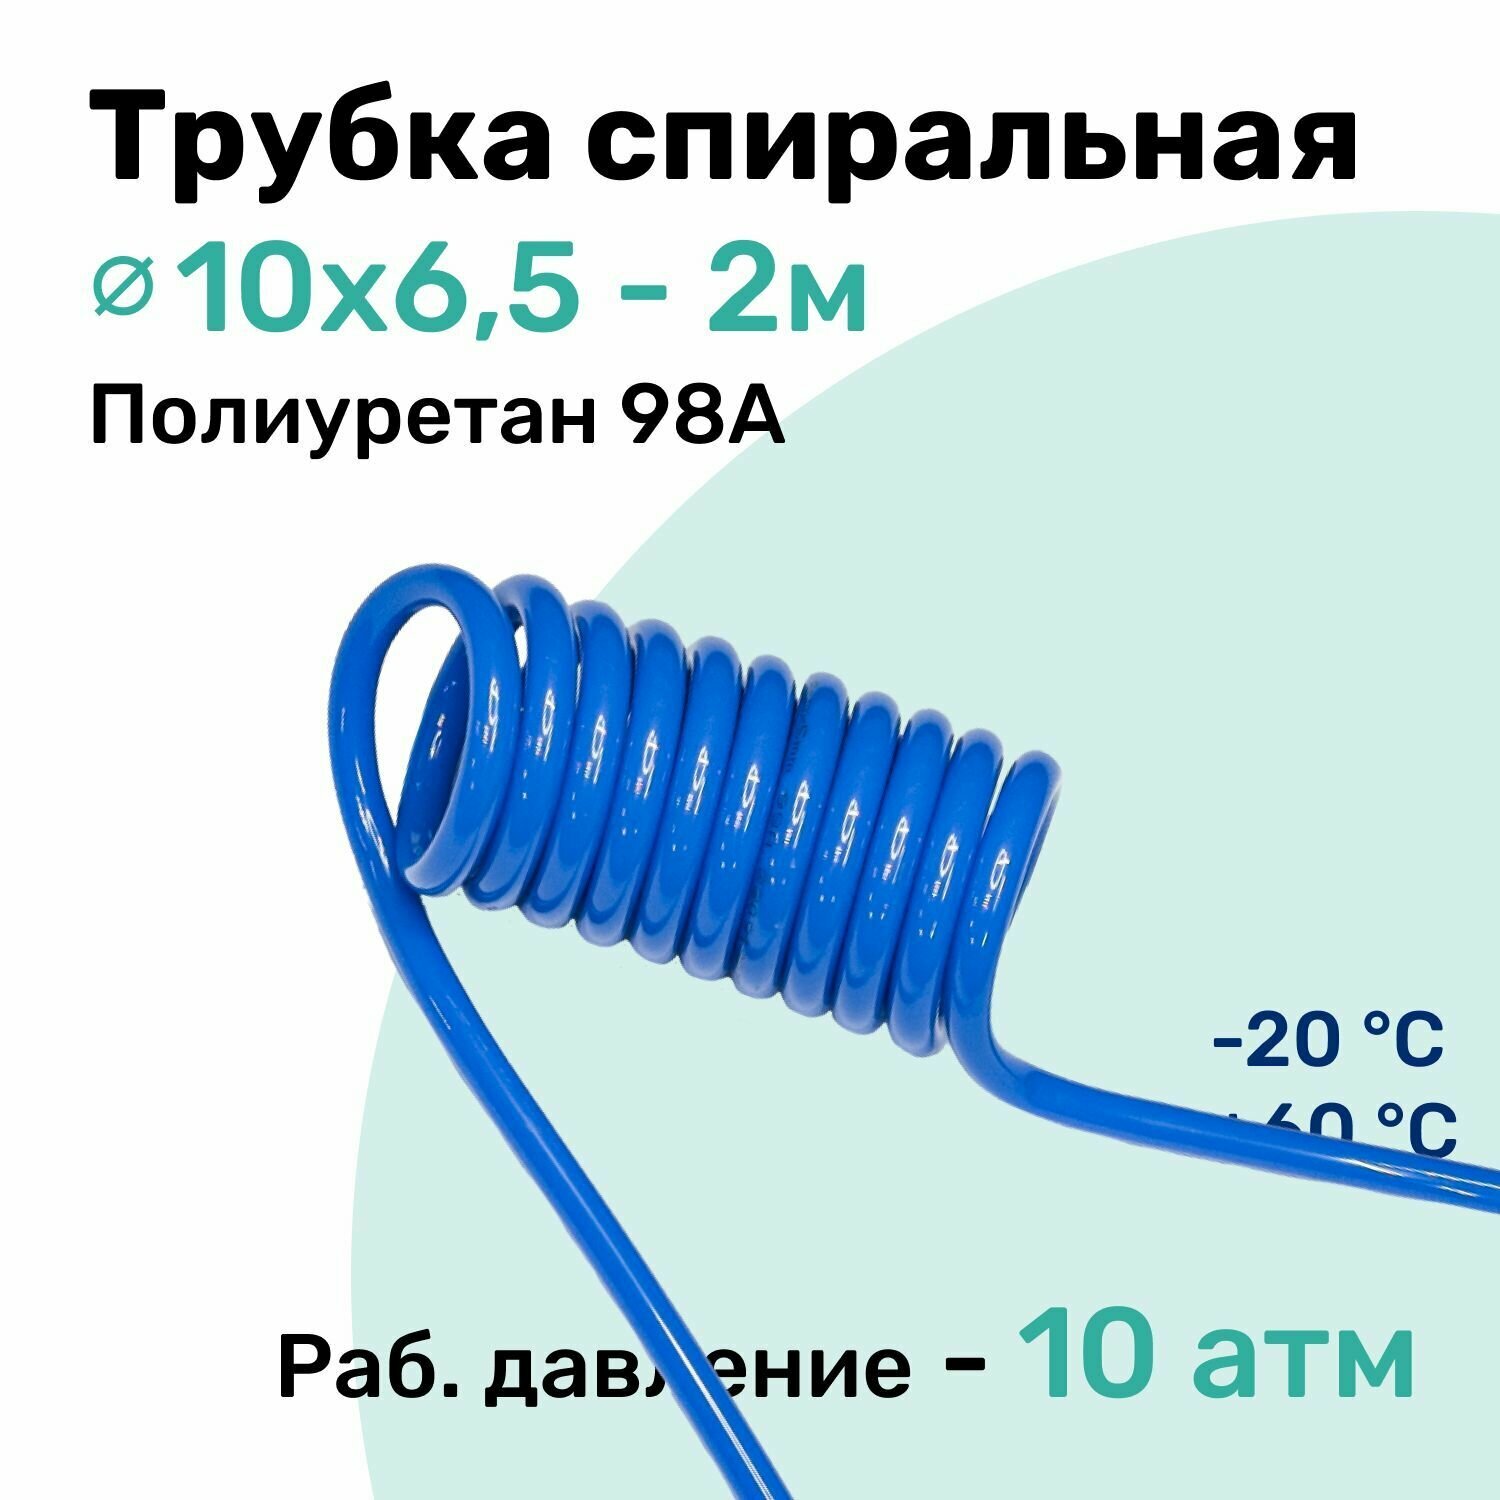 Пневмотрубка спиральная 10х6,5мм, полиуретановая PU98A, 2м, 10 атм, Синий, Шланг спиральный пневматический NBPT